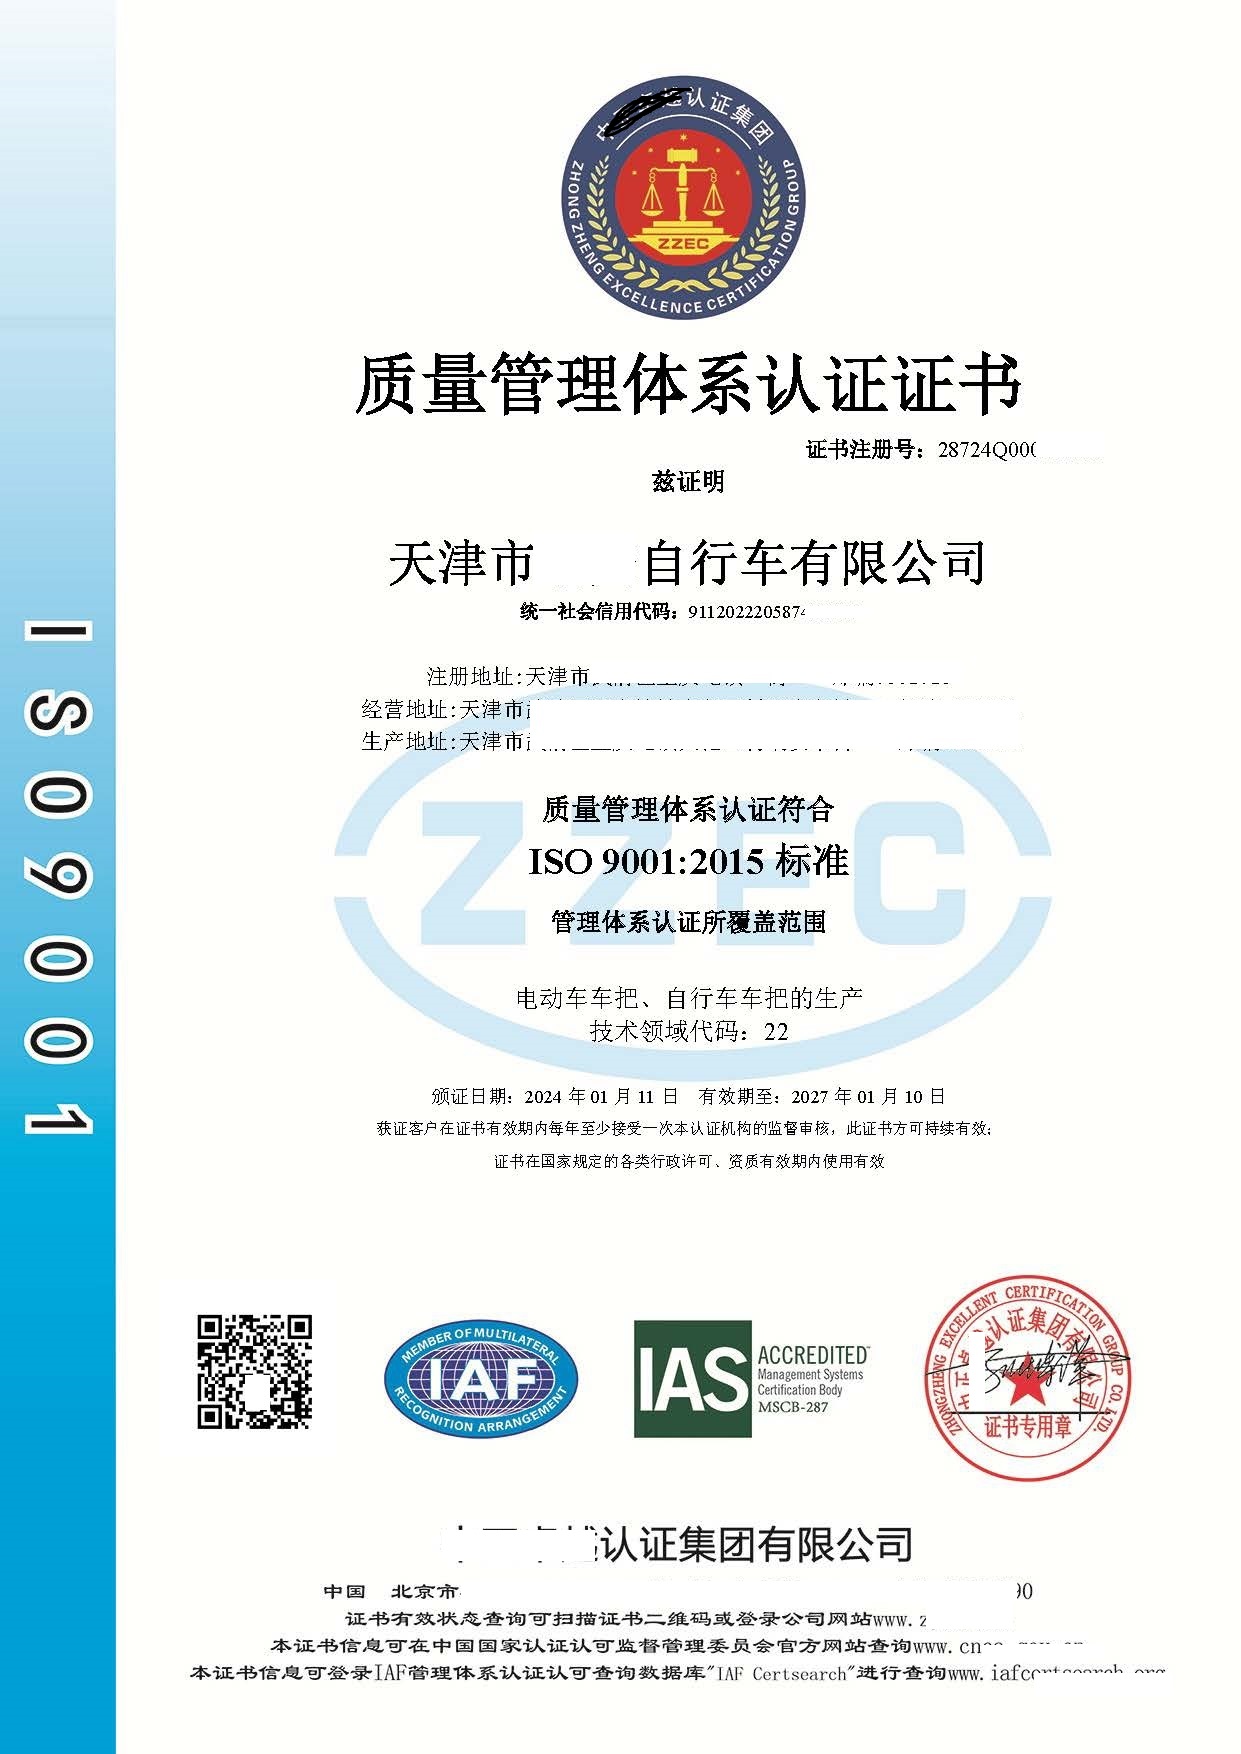 恭喜  天津市**自行车有限公司  获得ISO9001质量管理体系认证证书